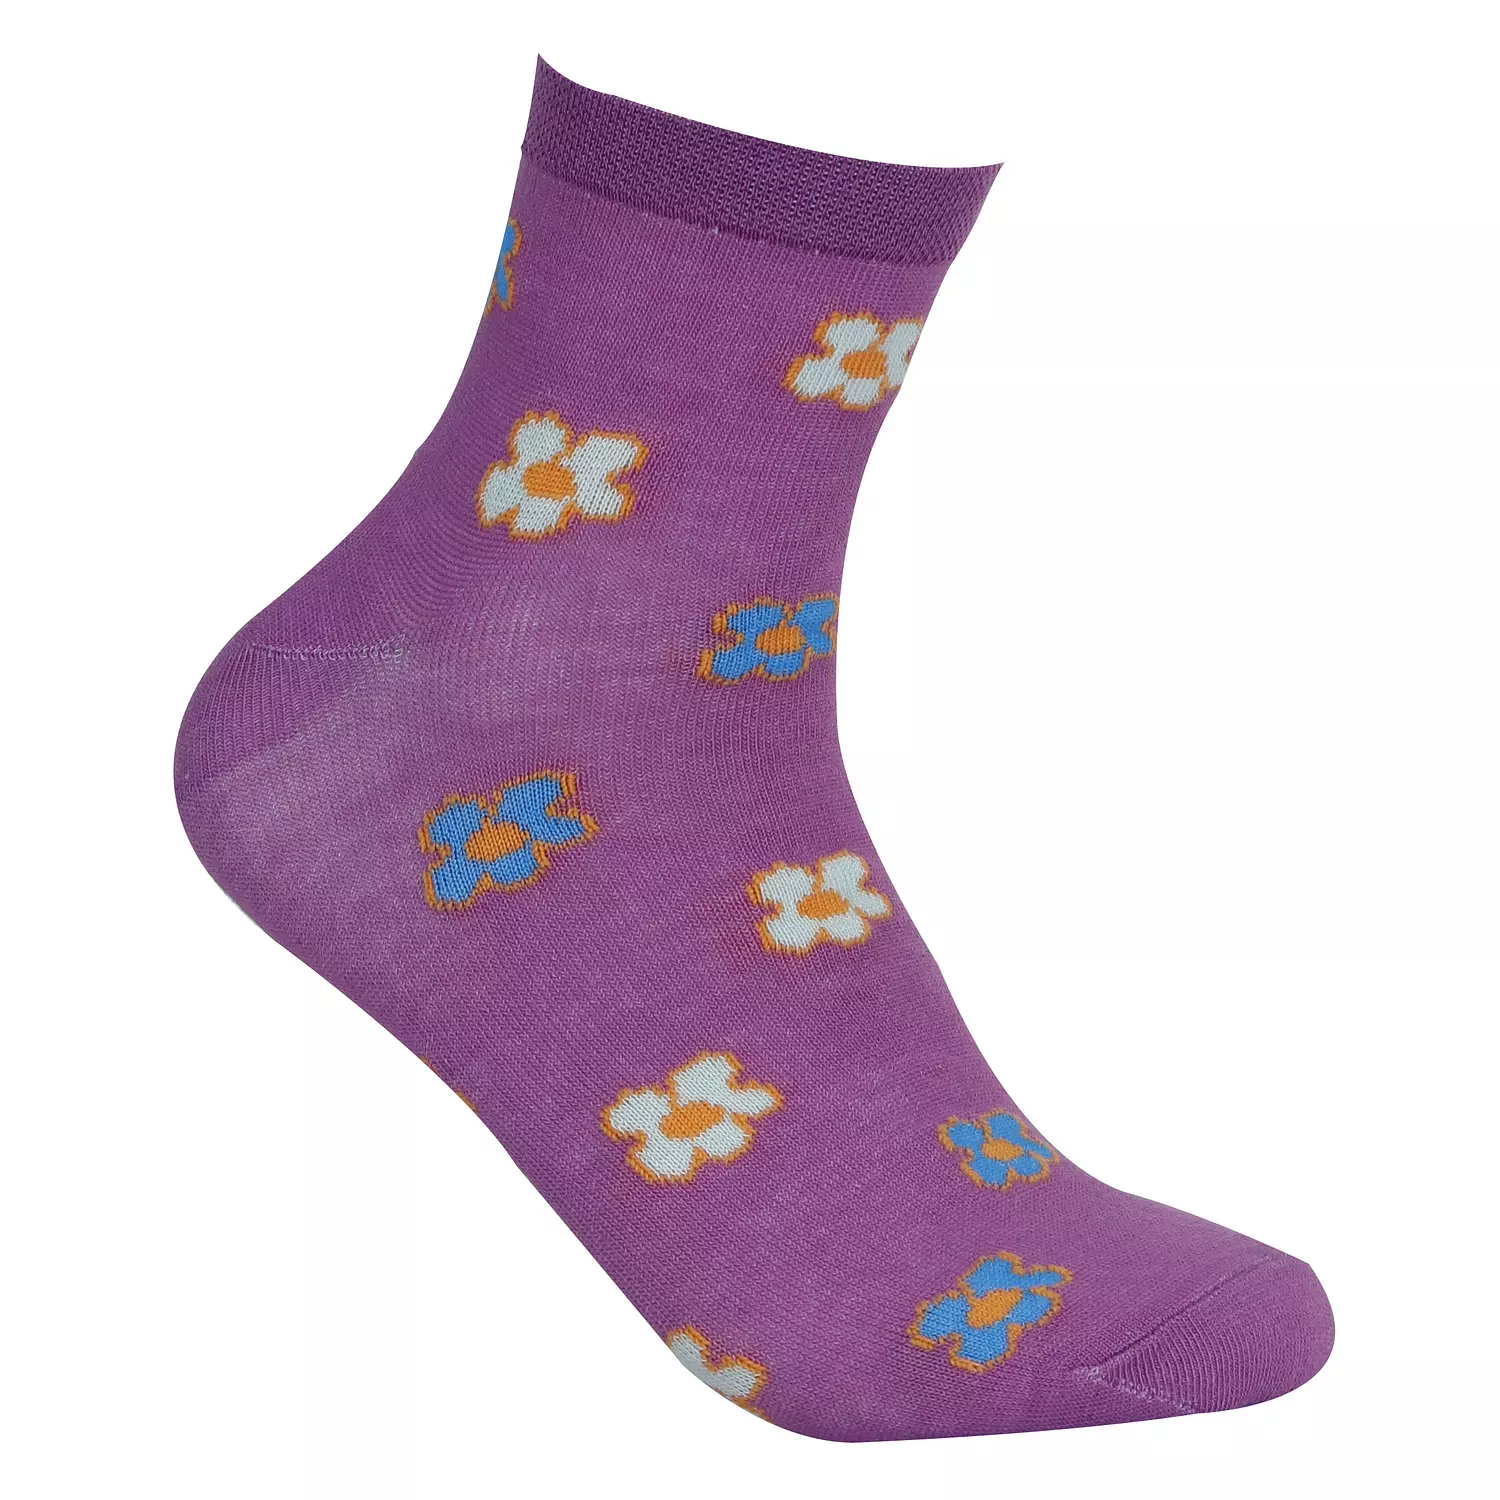  Viva Half Socks for women's  0